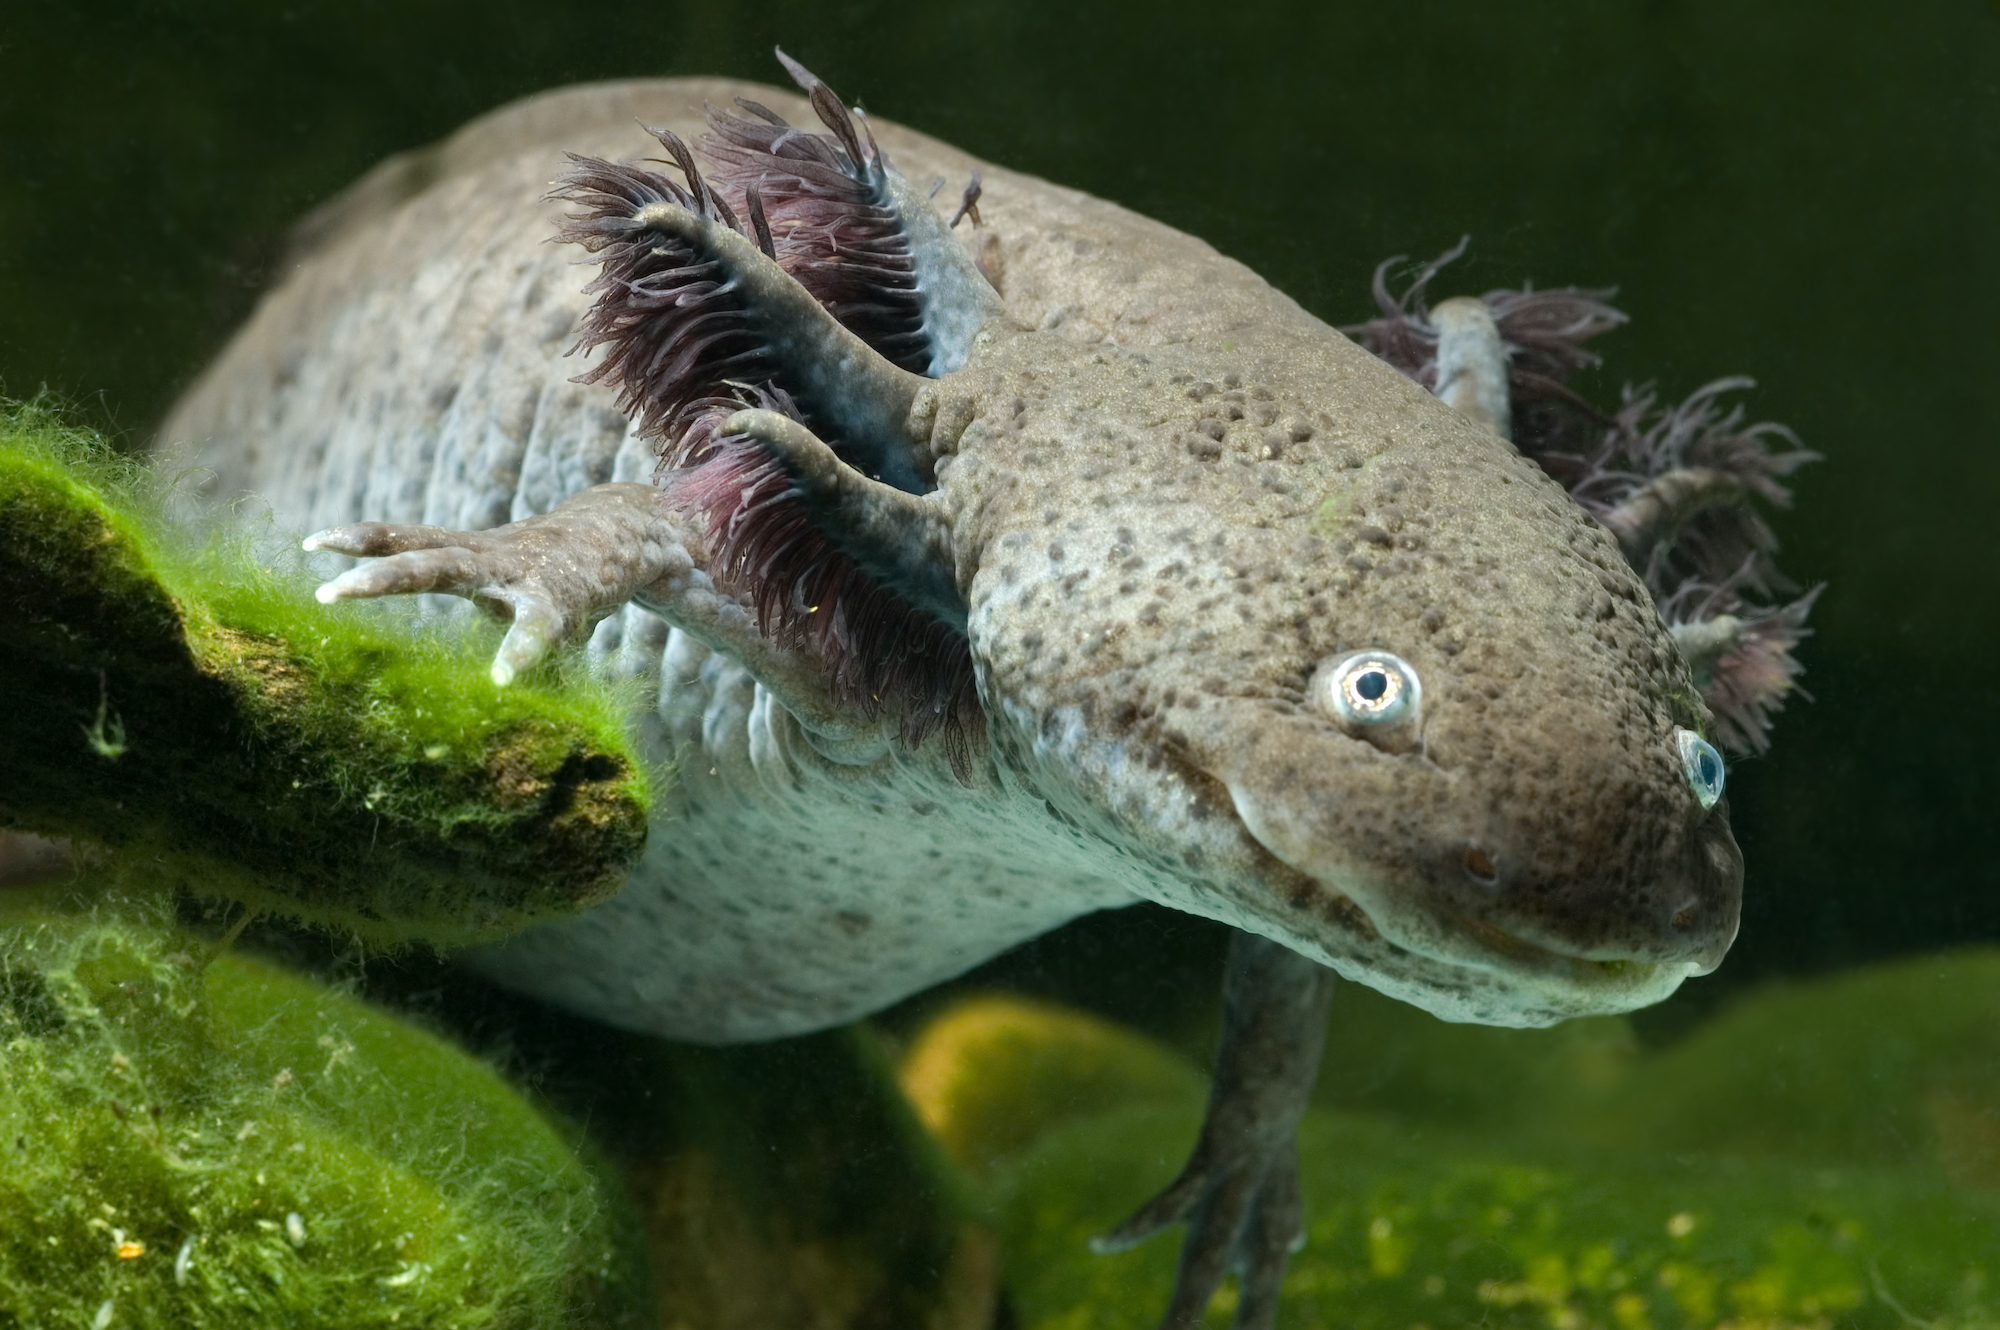 Species Characteristics - Save The Axolotls!